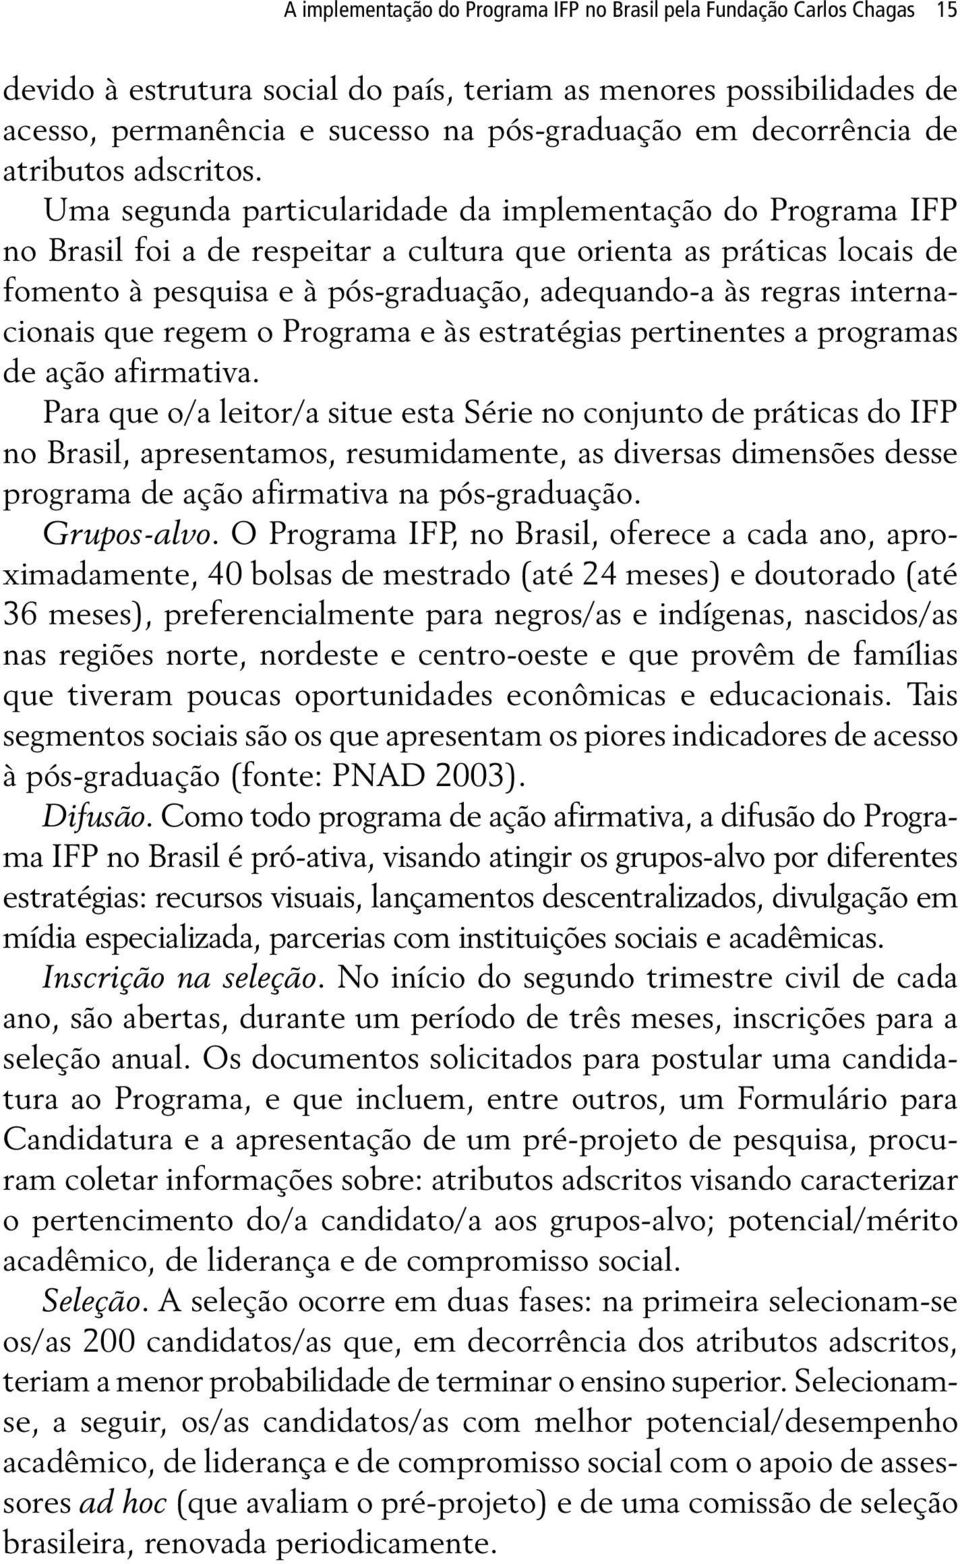 Uma segunda particularidade da implementação do Programa IFP no Brasil foi a de respeitar a cultura que orienta as práticas locais de fomento à pesquisa e à pós-graduação, adequando-a às regras